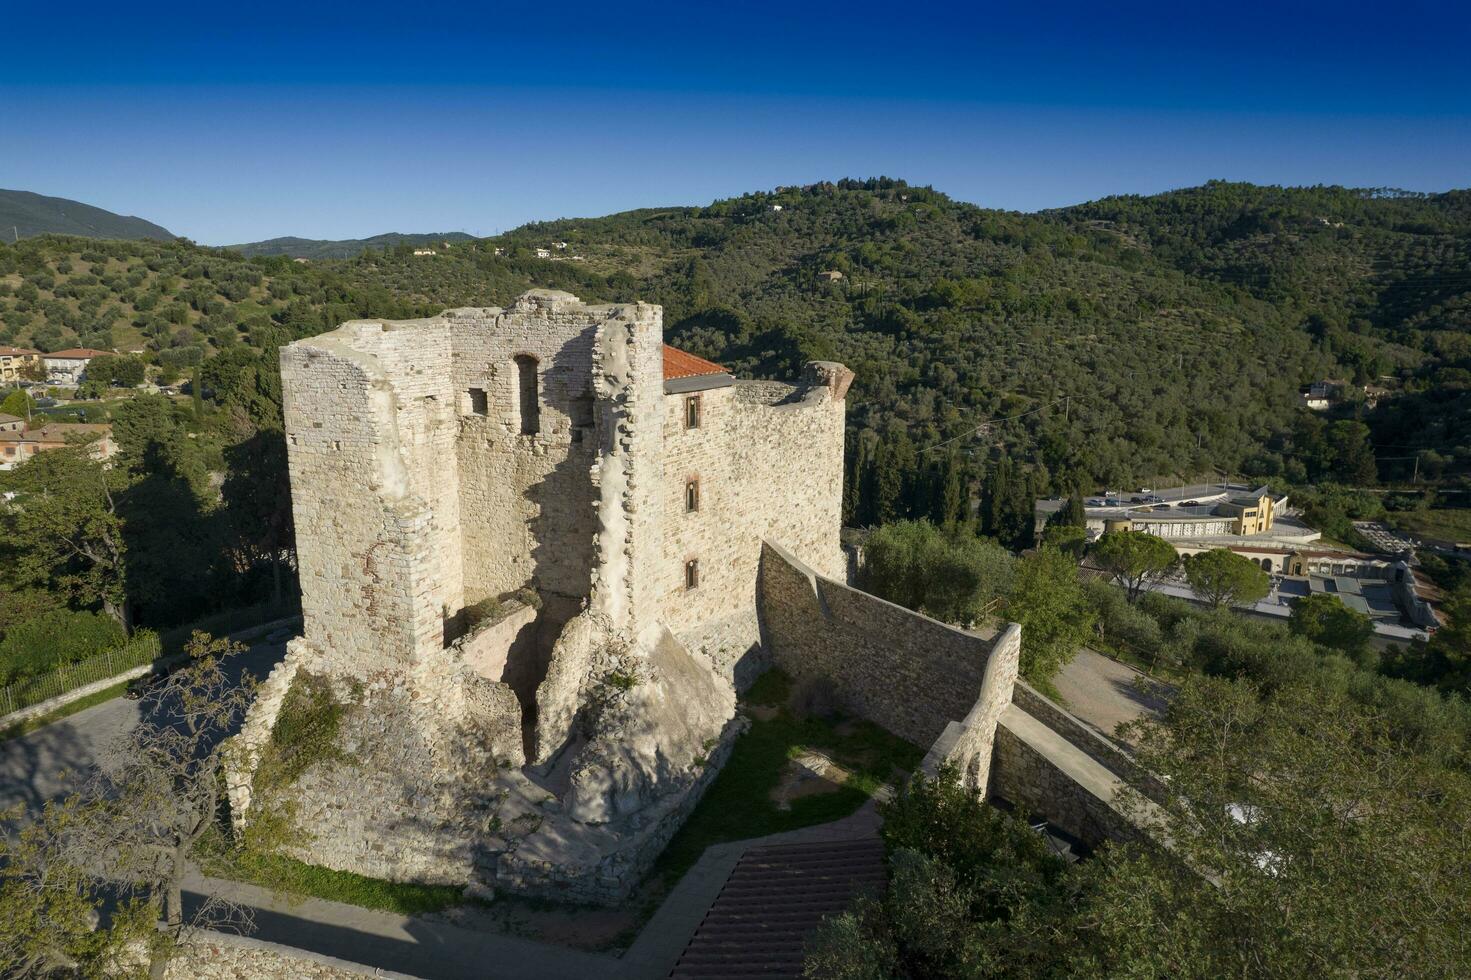 The small fortress of Suvereto Tuscany Italy photo